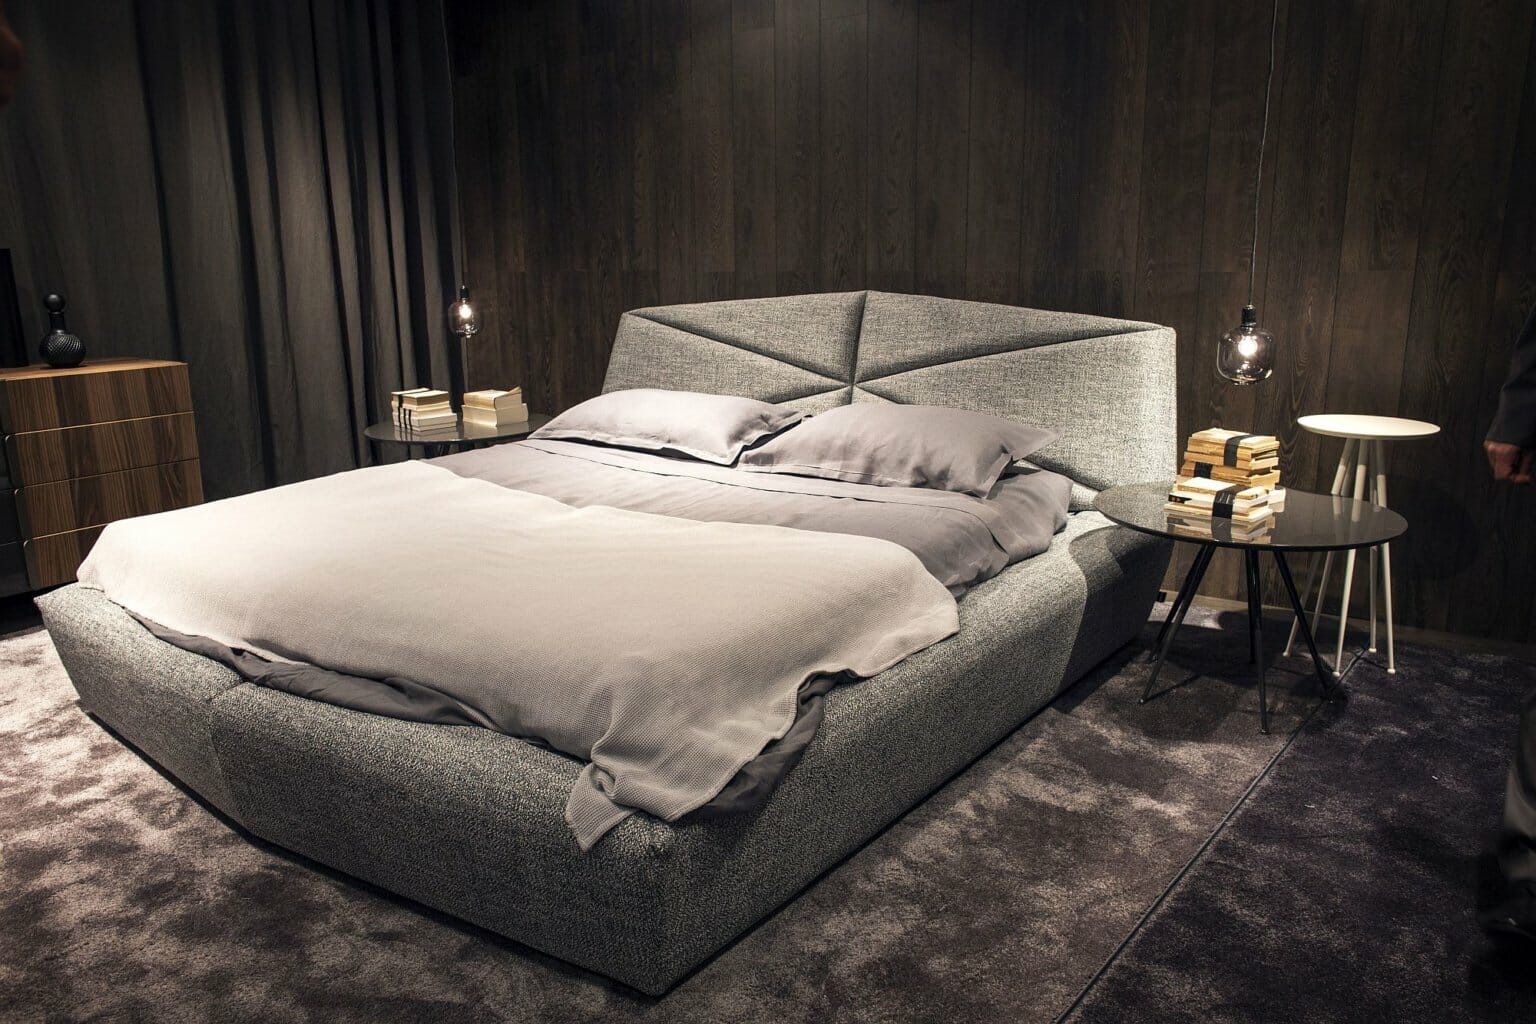 hình ảnh phòng ngủ màu xám chủ đạo với giường nệm êm ái, tủ gỗ, bàn kính tròn, đèn thả mặt dây chuyền